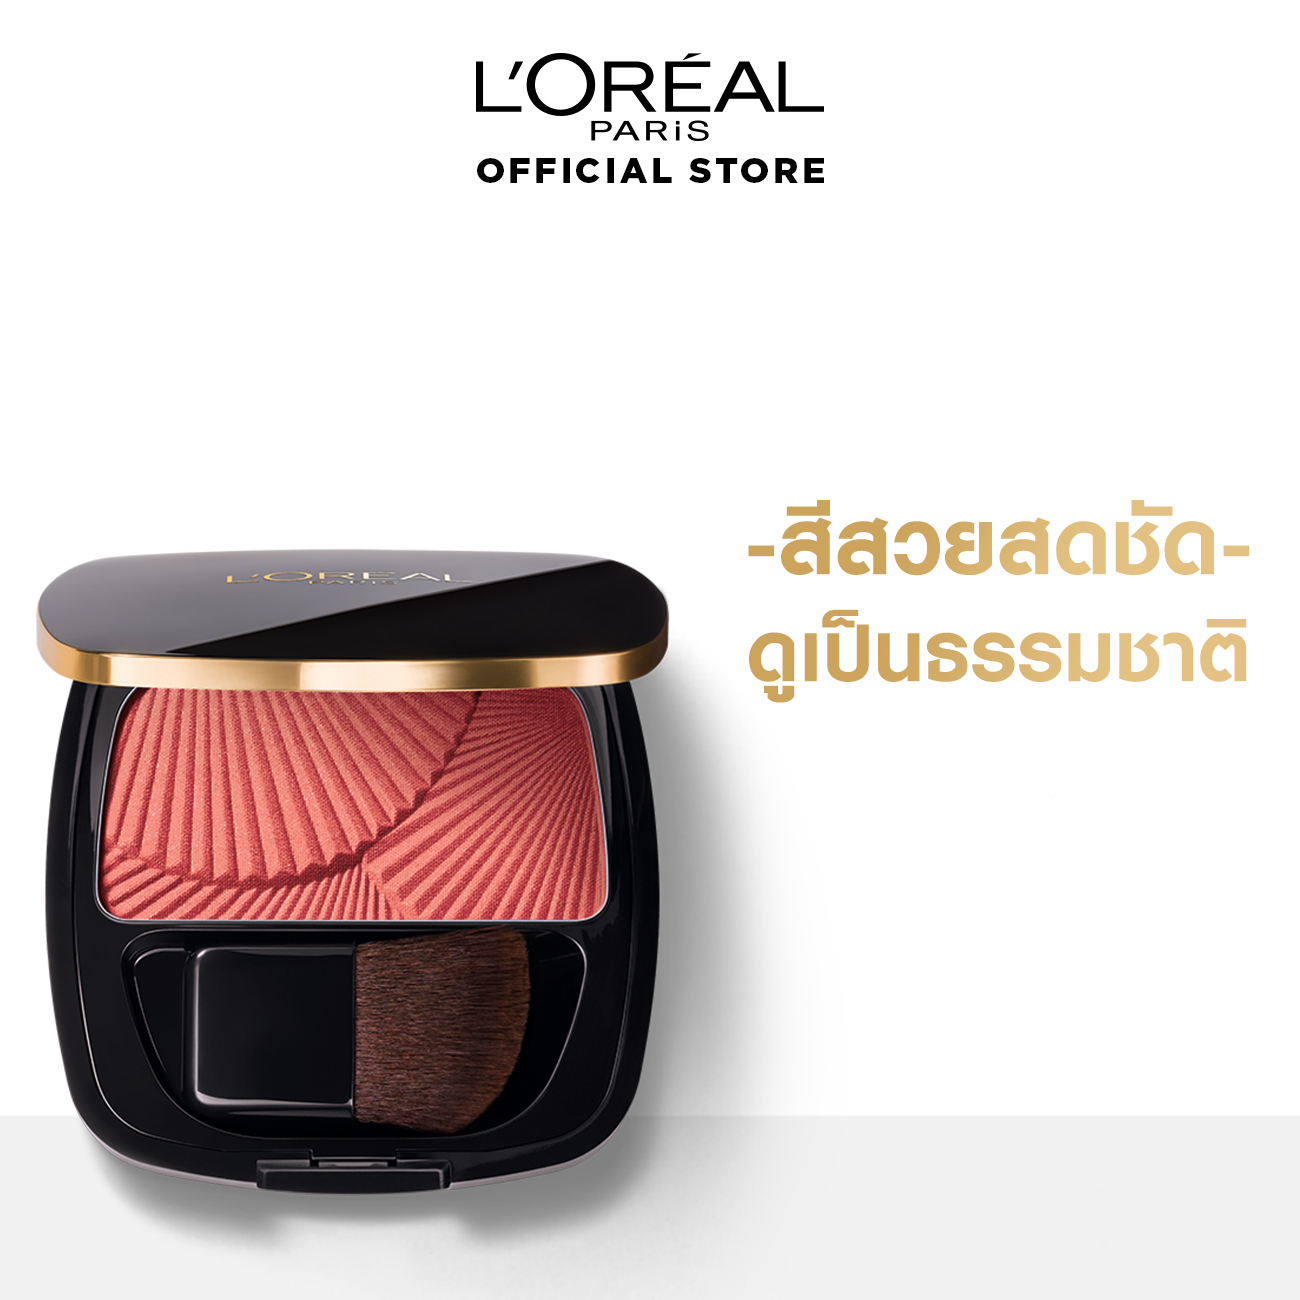 L’OREAL Le Blush Shimmer 4.5g ลอรีอัล ปารีส เลอ บลัช บลัชออน 4.5 ก. (เครื่องสำอาง,บลัชออน,ปัดแก้ม,Cosmetics, blush, blush)